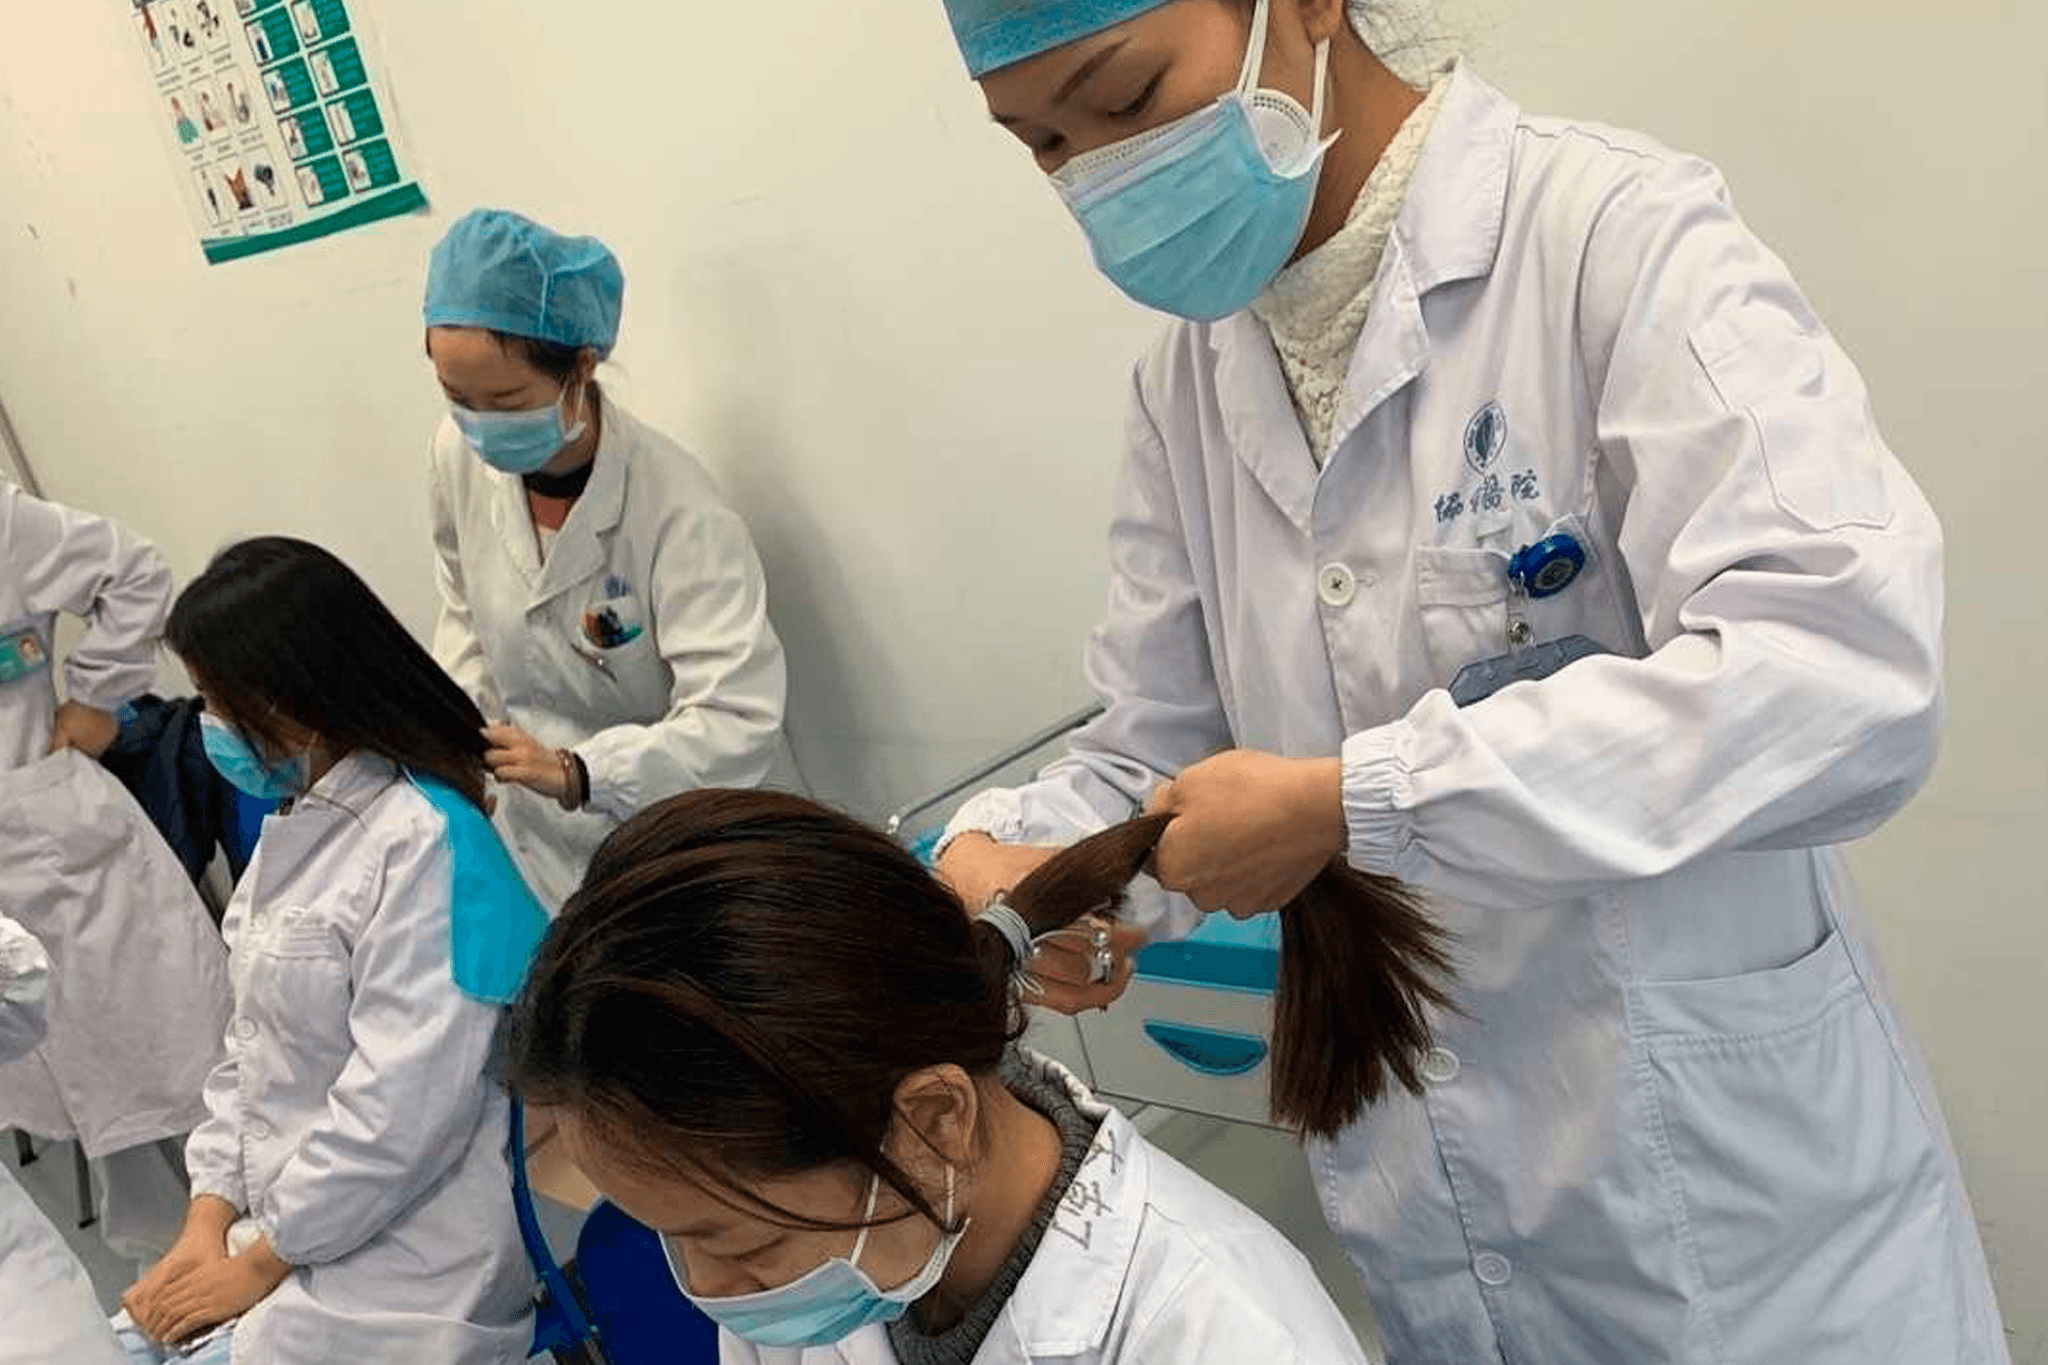 Krankenpflegerinnen aus verschiedenen Regionen Chinas kürzen sich vor dem Einsatz in Wuhan gegenseitig die Haare.